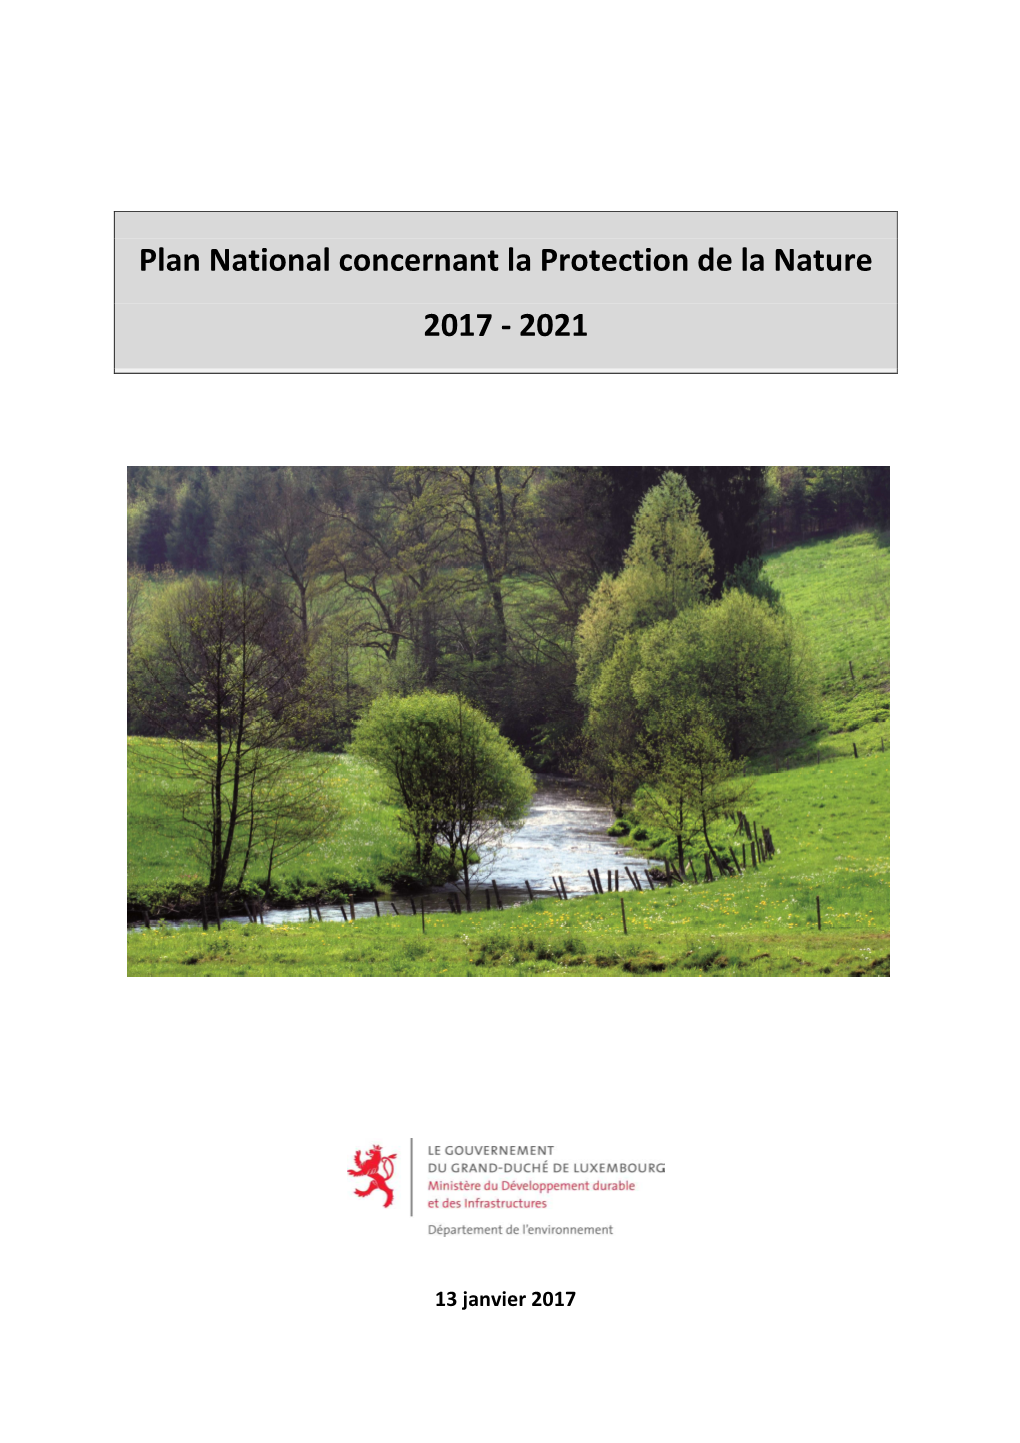 Plan National Concernant La Protection De La Nature 2017 - 2021